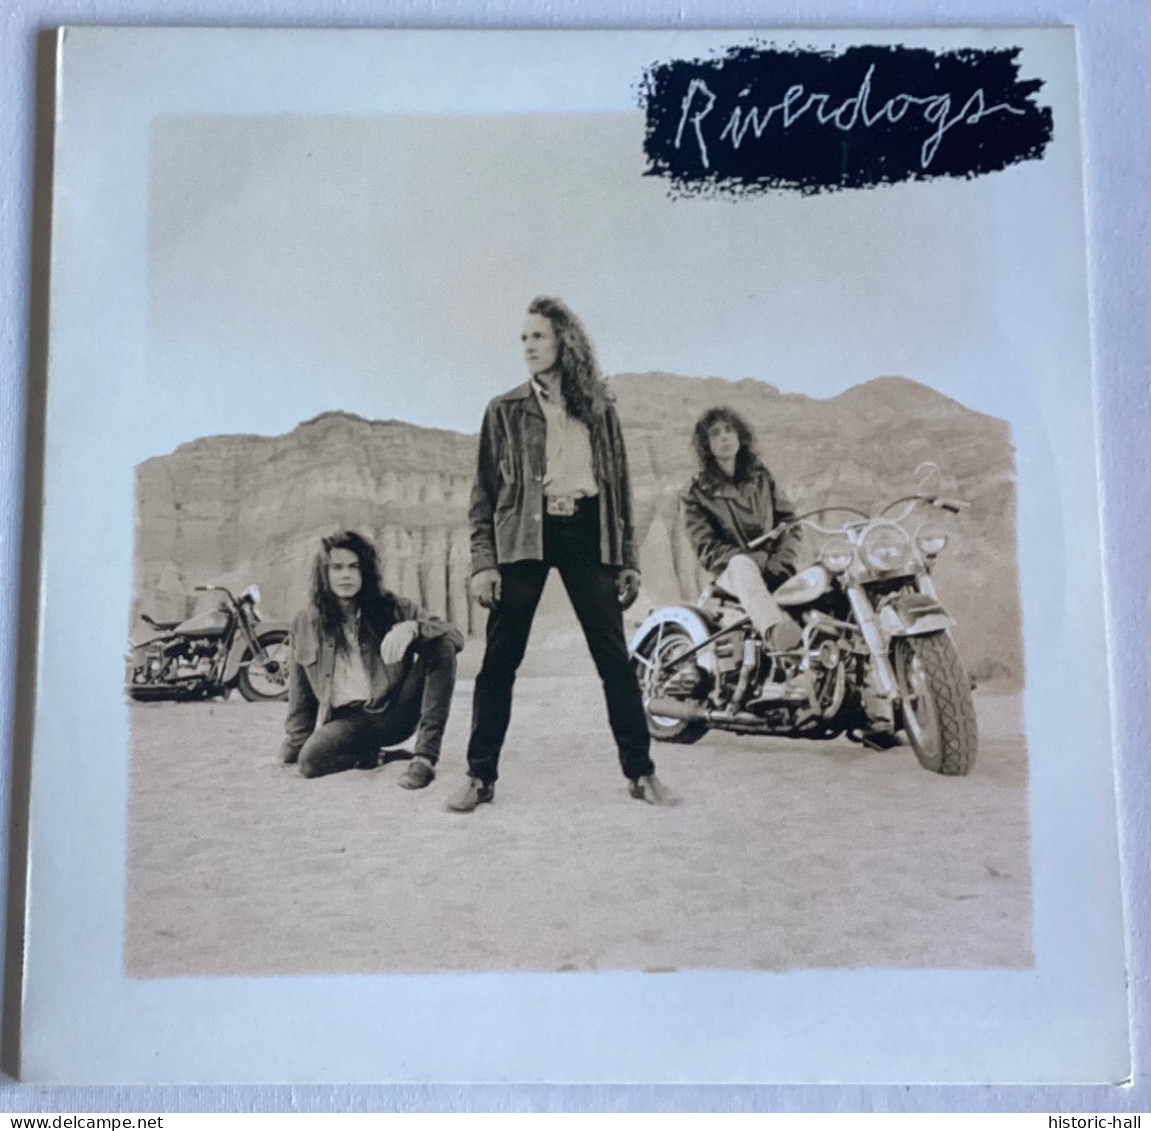 RIVERDOGS - Same - LP - 1990 -  Holland  Press - Rock